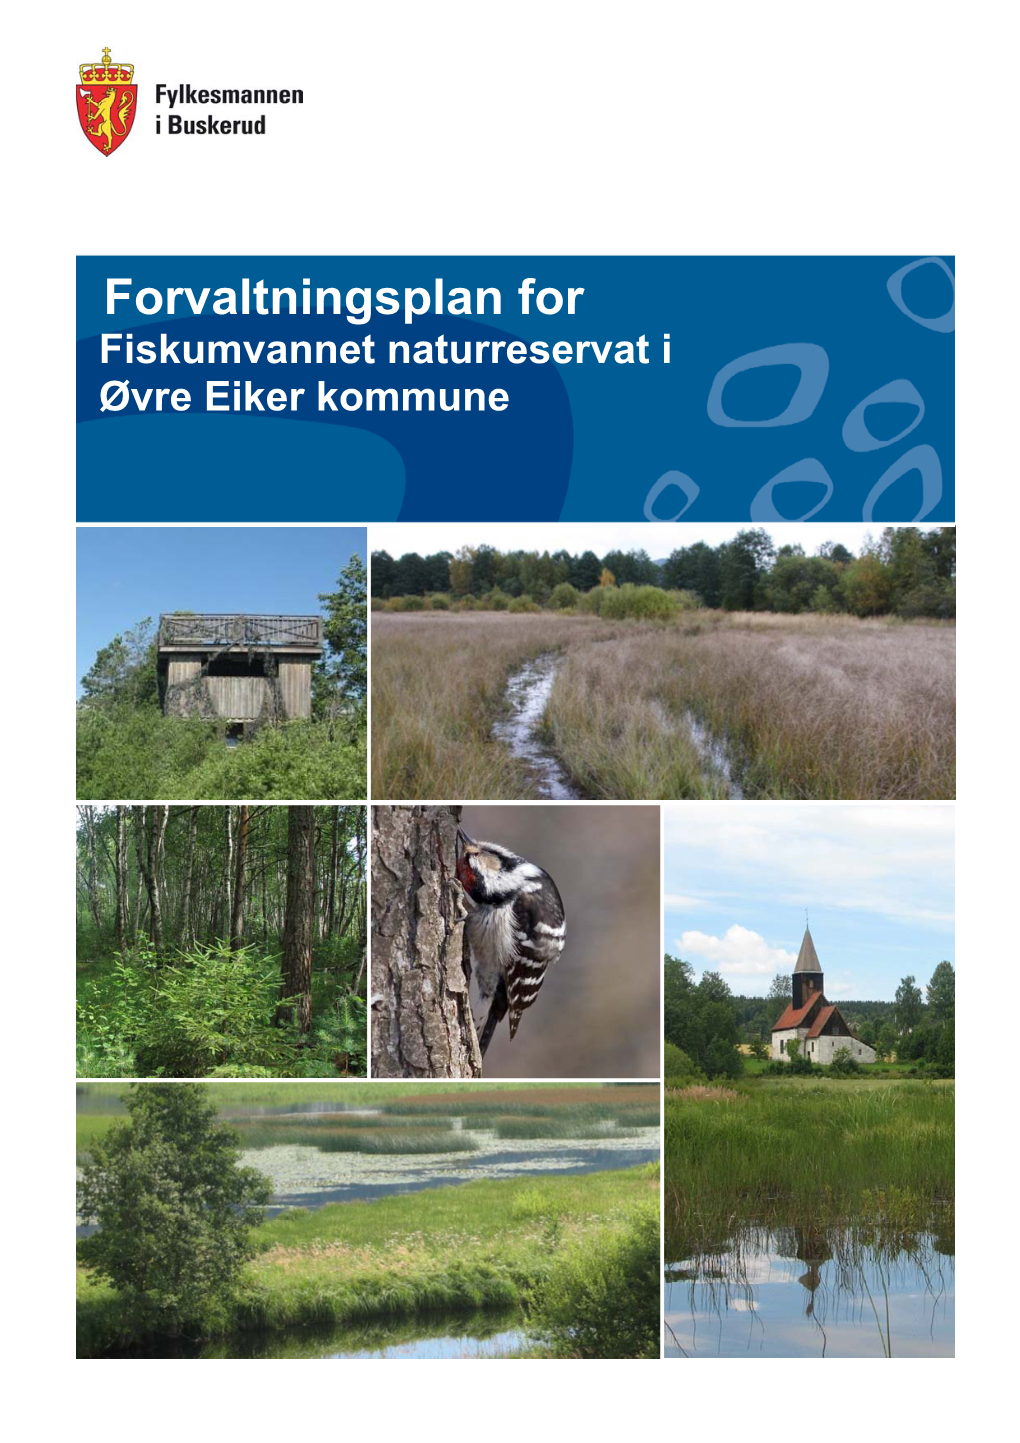 Forvaltningsplan for Fiskumvannet Naturreservat I Øvre Eiker Kommune Fylkesmannen I Buskerud Forvaltningsplan for Fiskumvannet Naturreservat 2